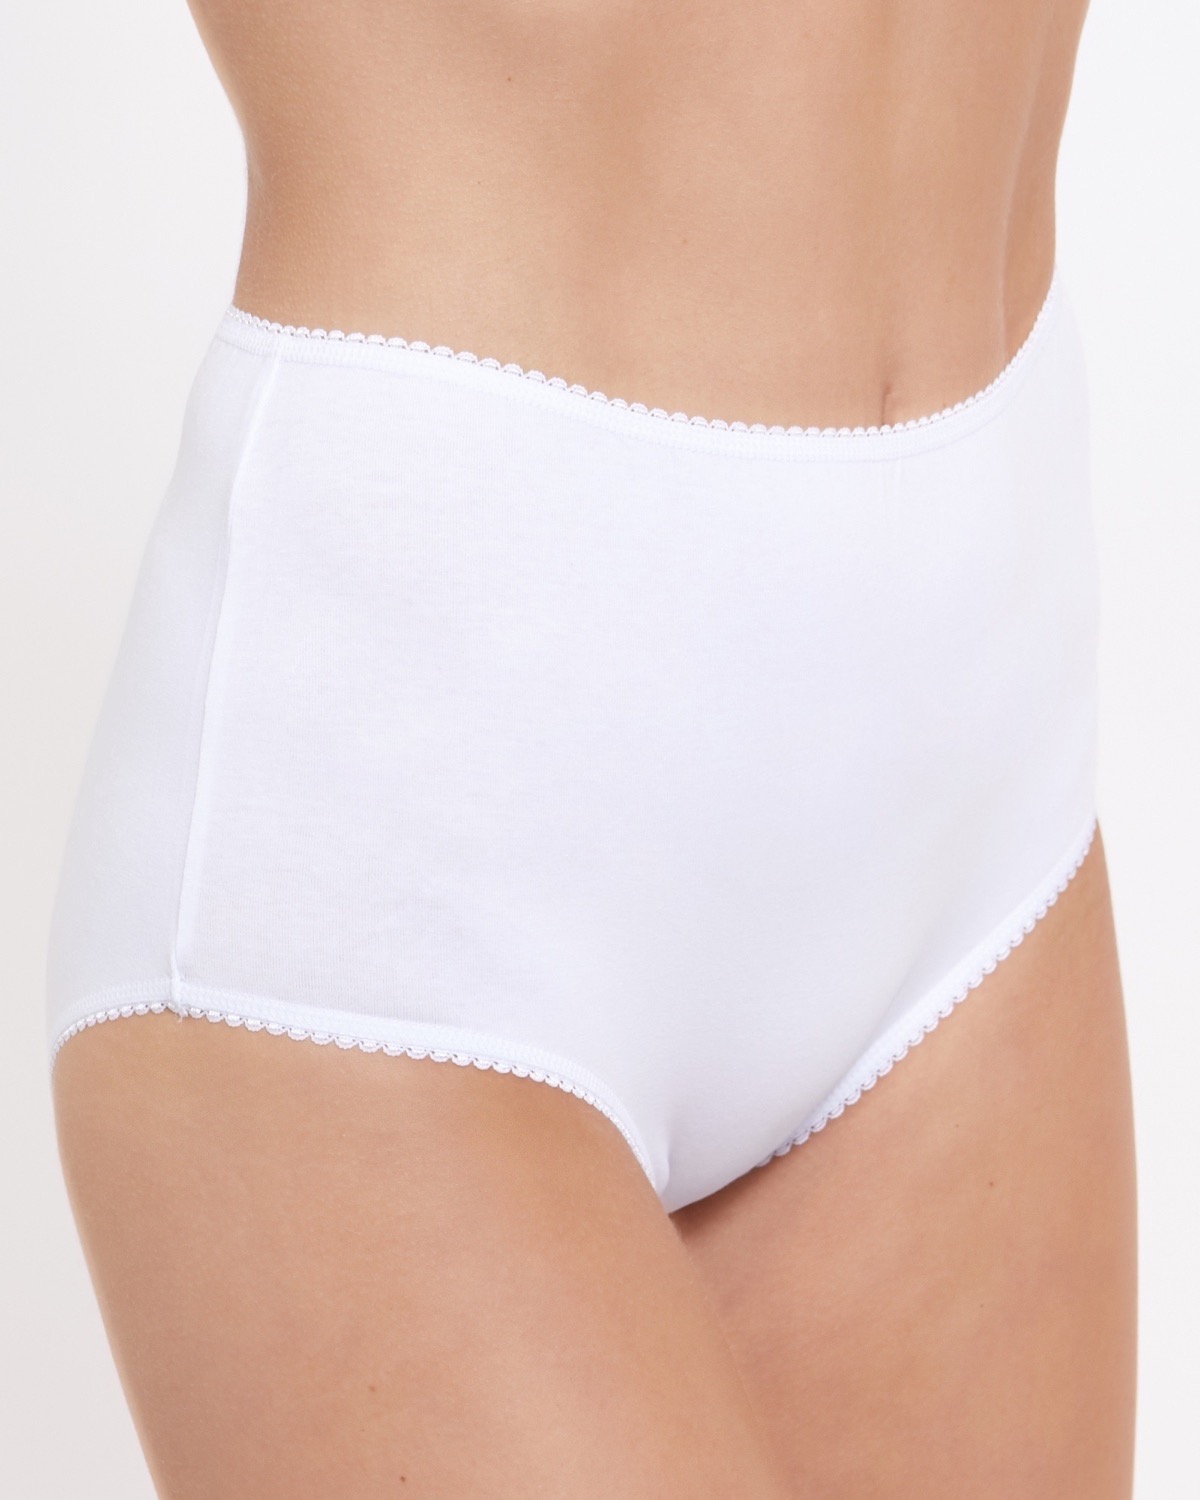 Ladies Women 100% Cotton Full Size Briefs Knickers Underwear UK